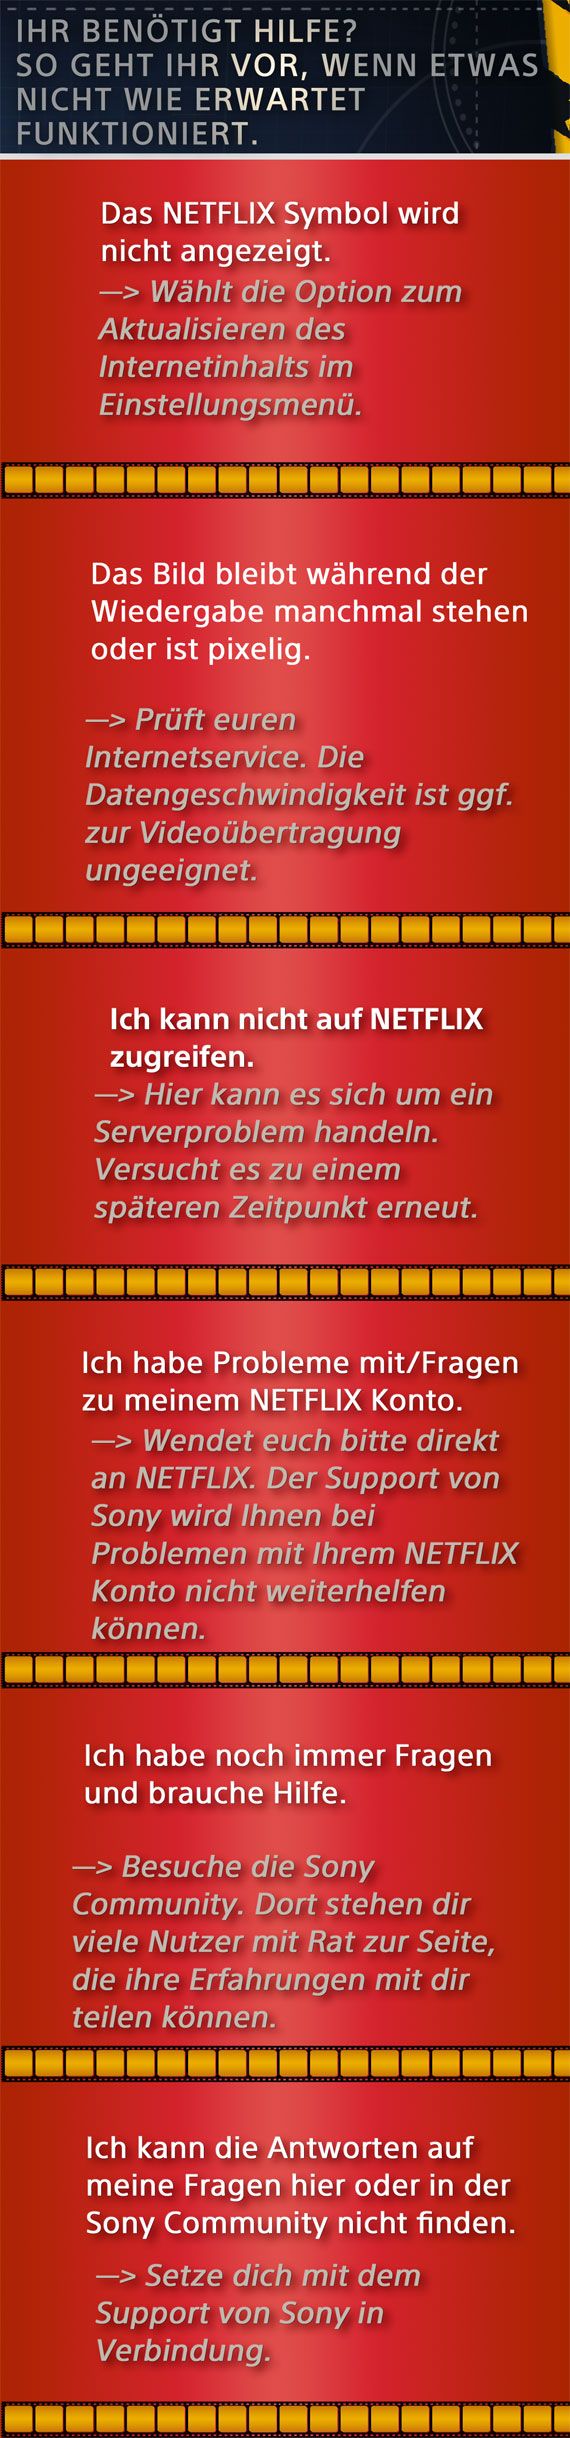 Netflix_de_3.jpg